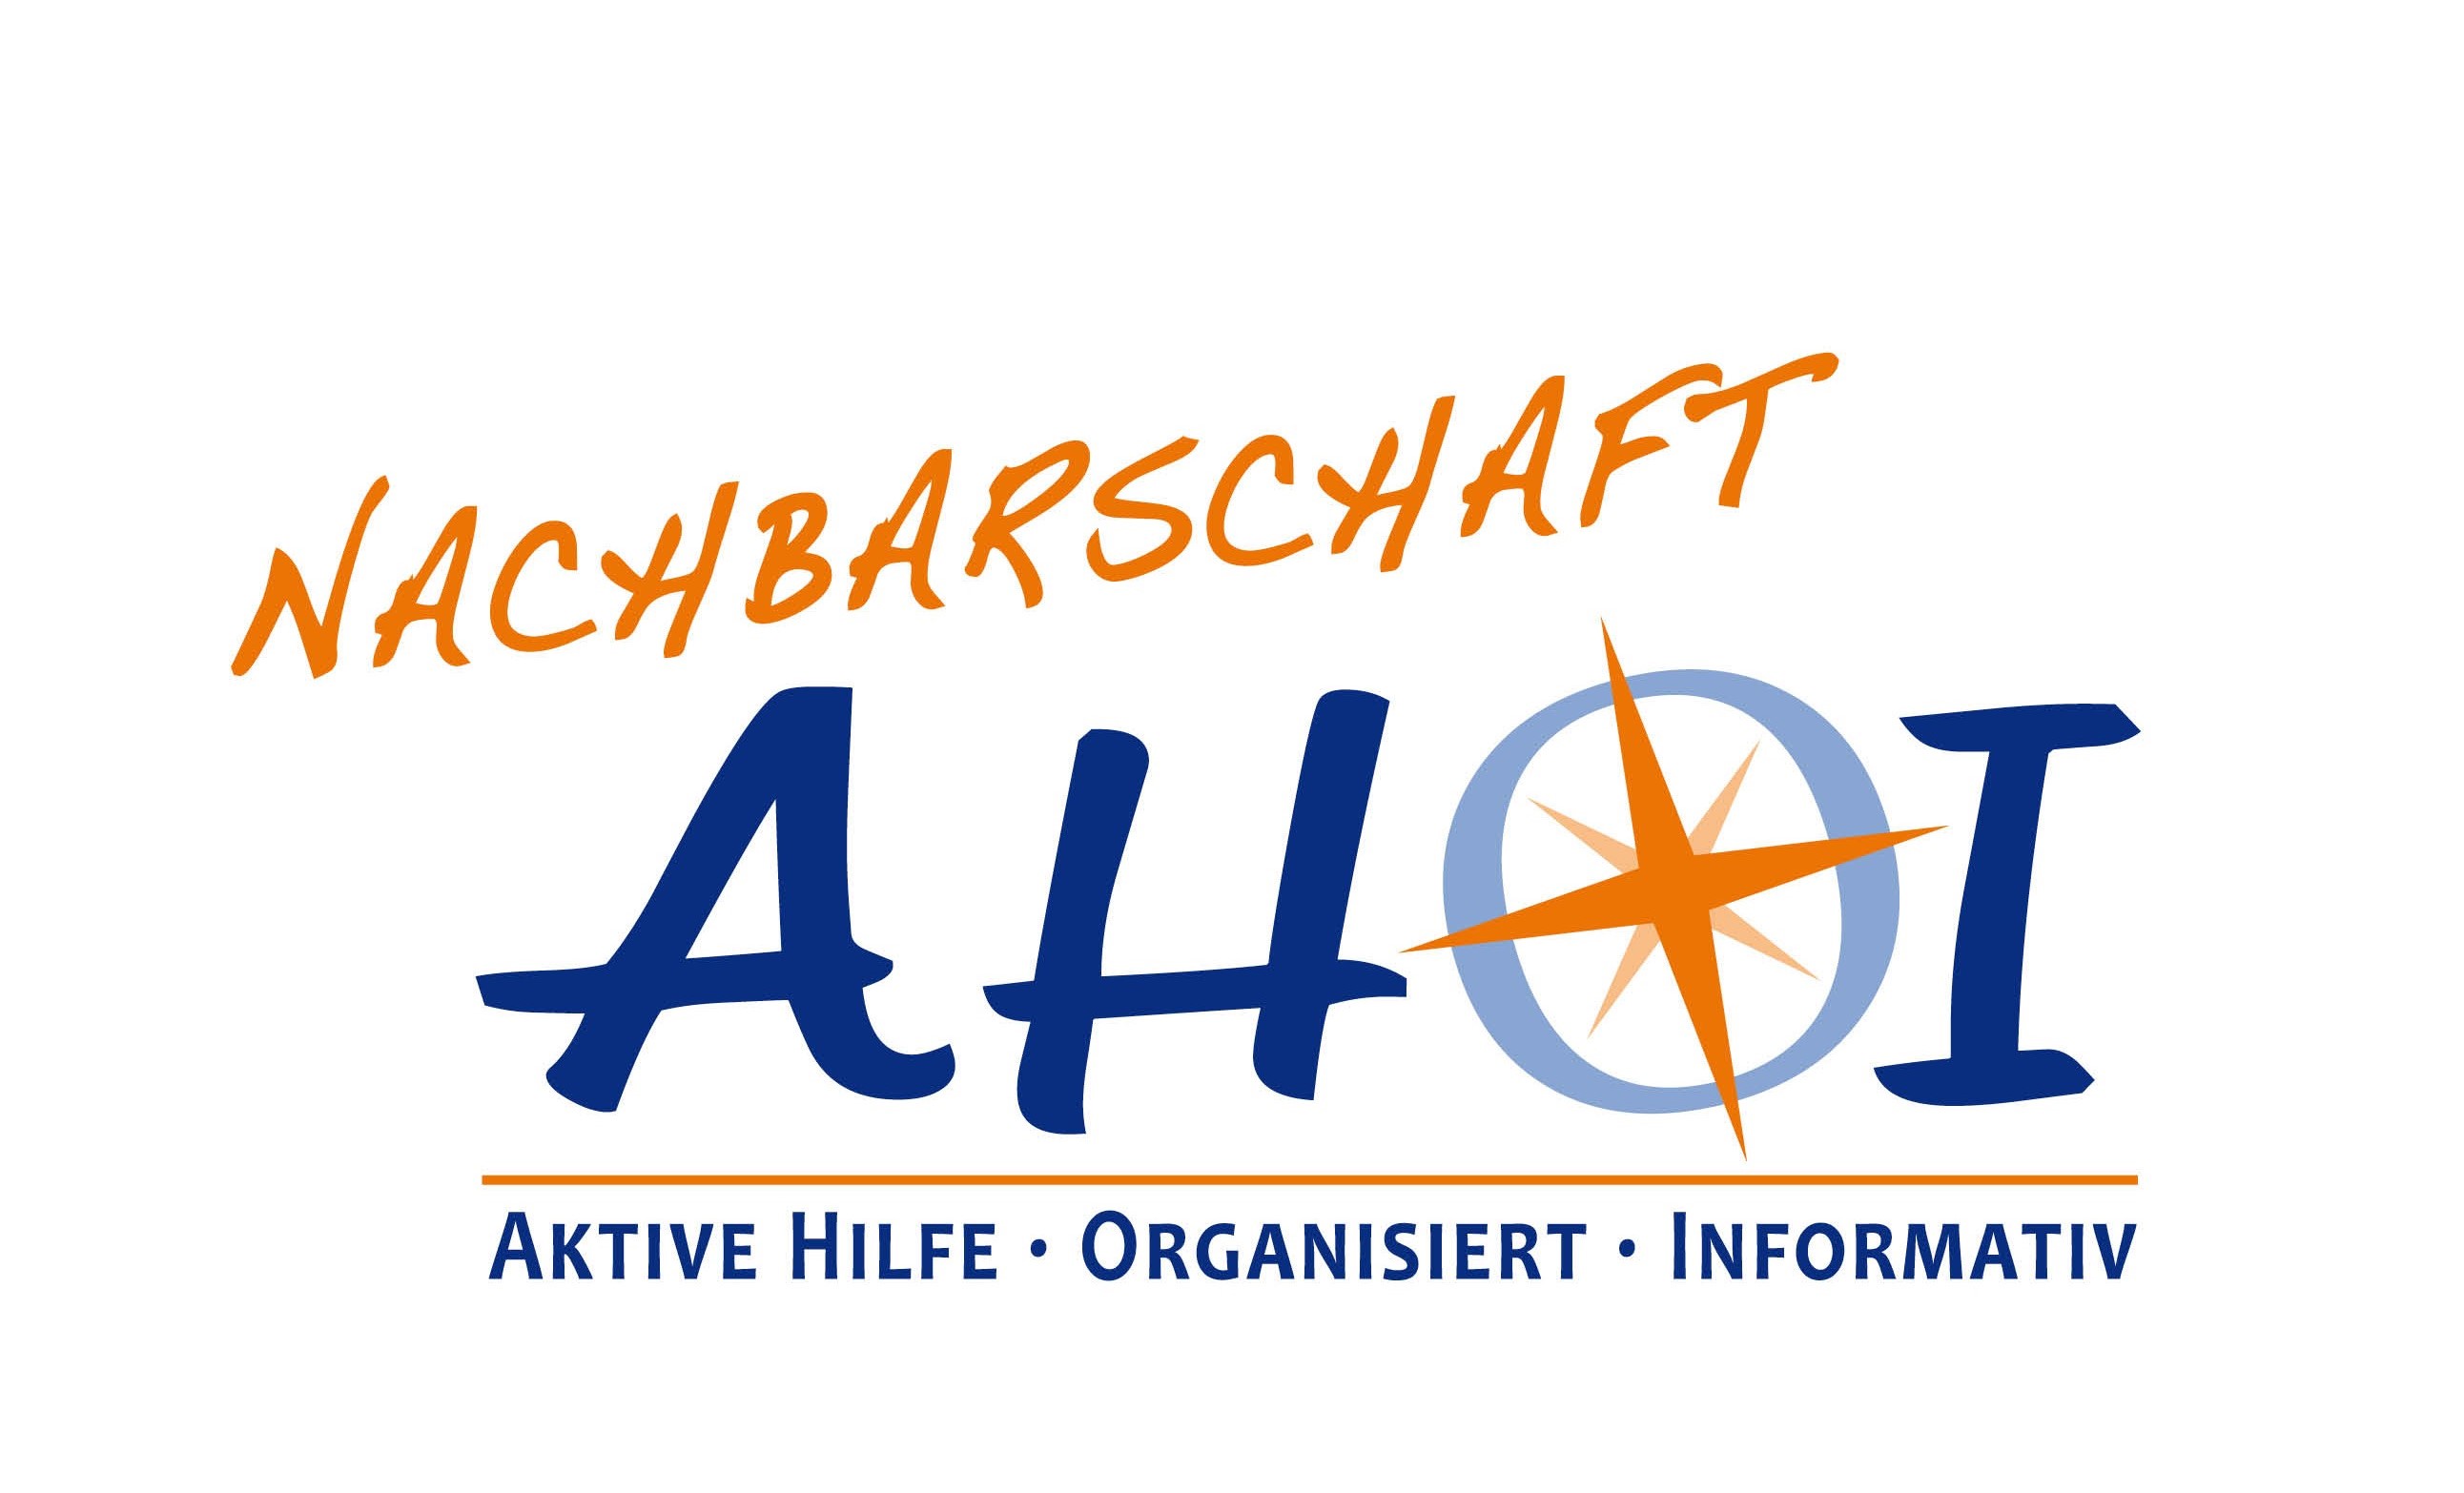 Logo von dem Verein "Nachbarschaft Ahoi"